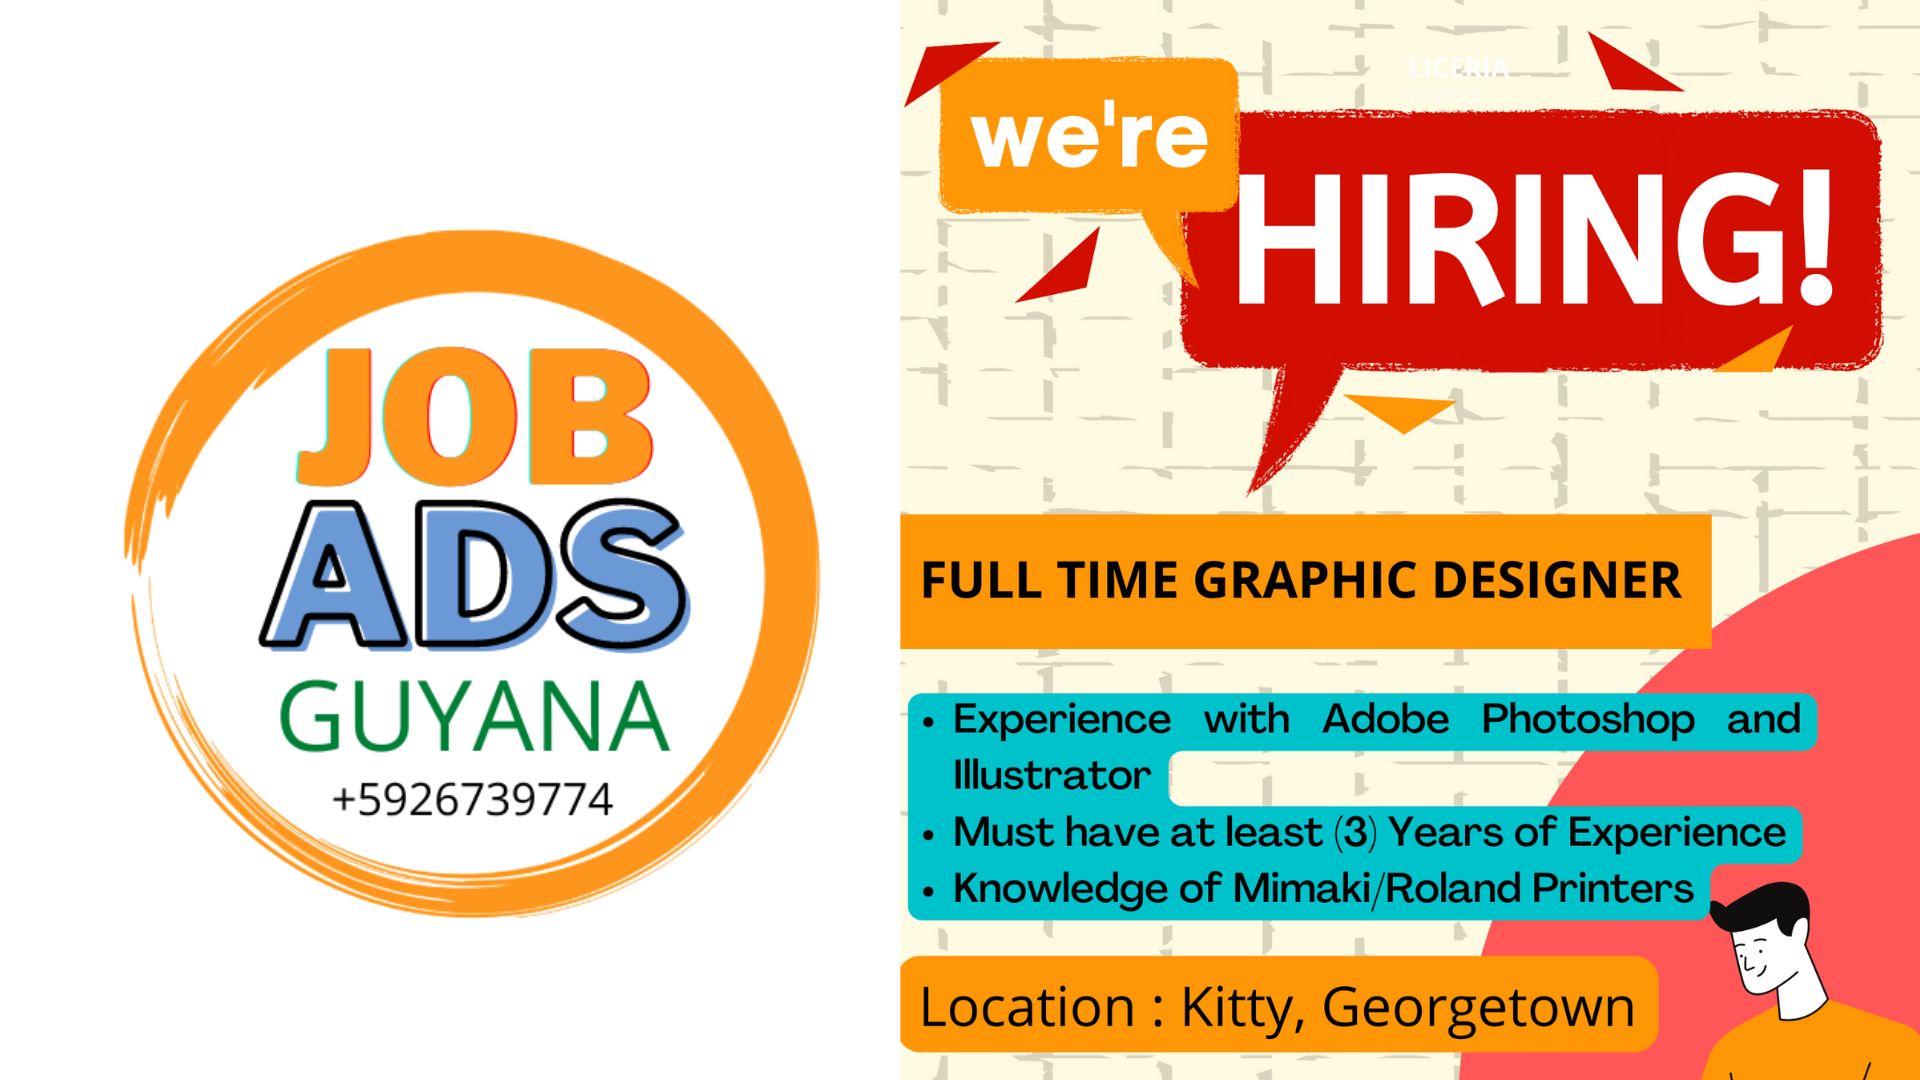 Vacancy in Guyana for Graphic Designer